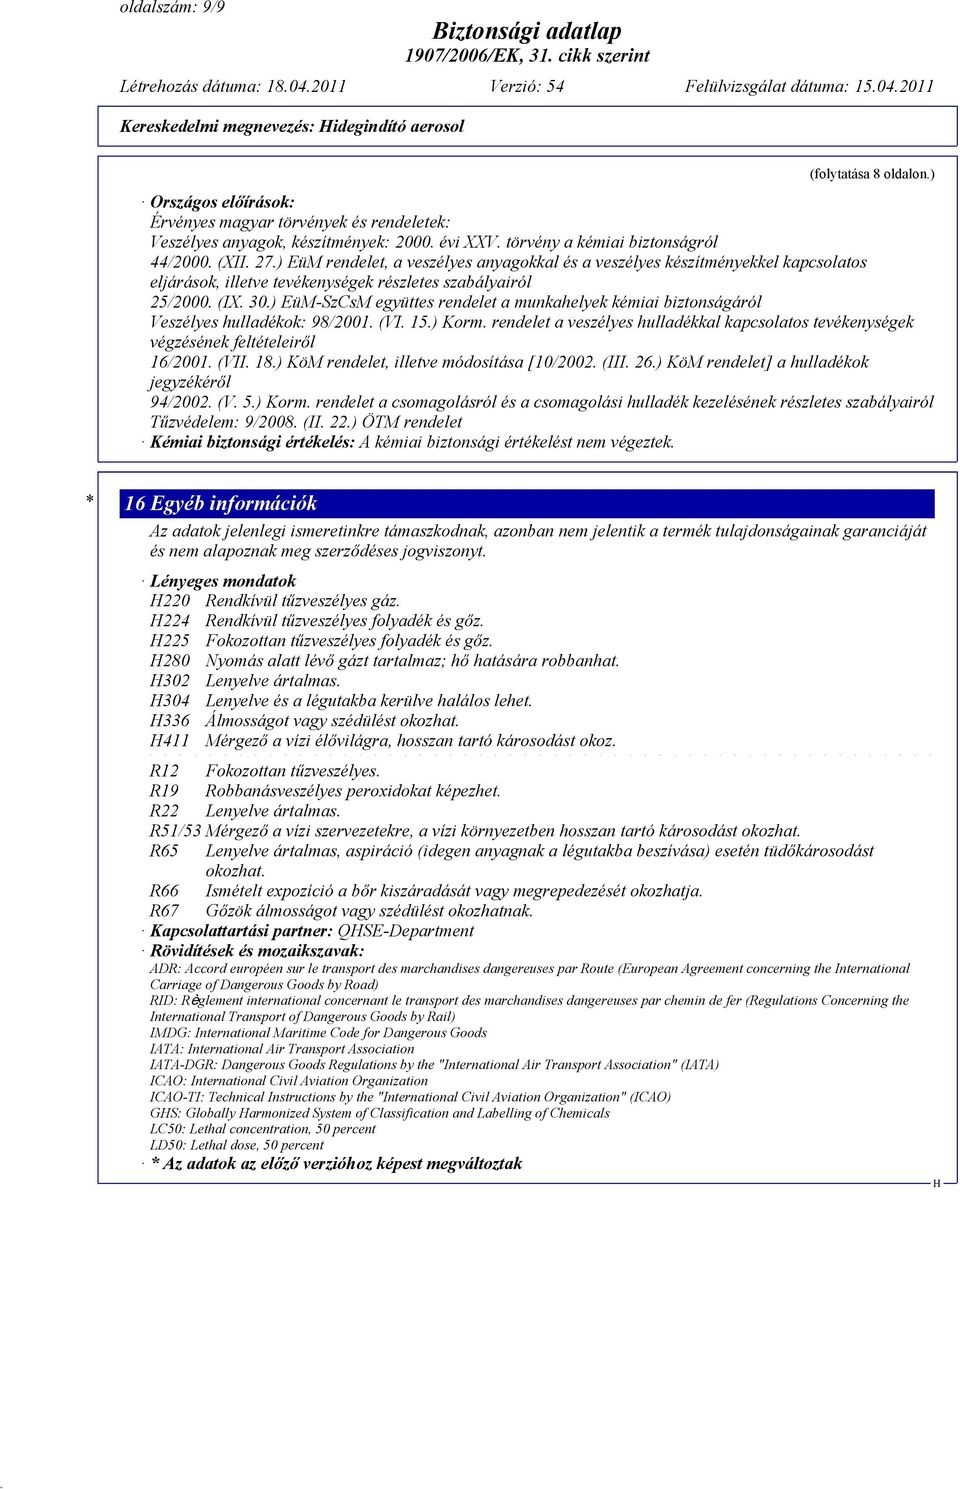 30.) EüM-SzCsM együttes rendelet a munkahelyek kémiai biztonságáról Veszélyes hulladékok: 98/2001. (VI. 15.) Korm.